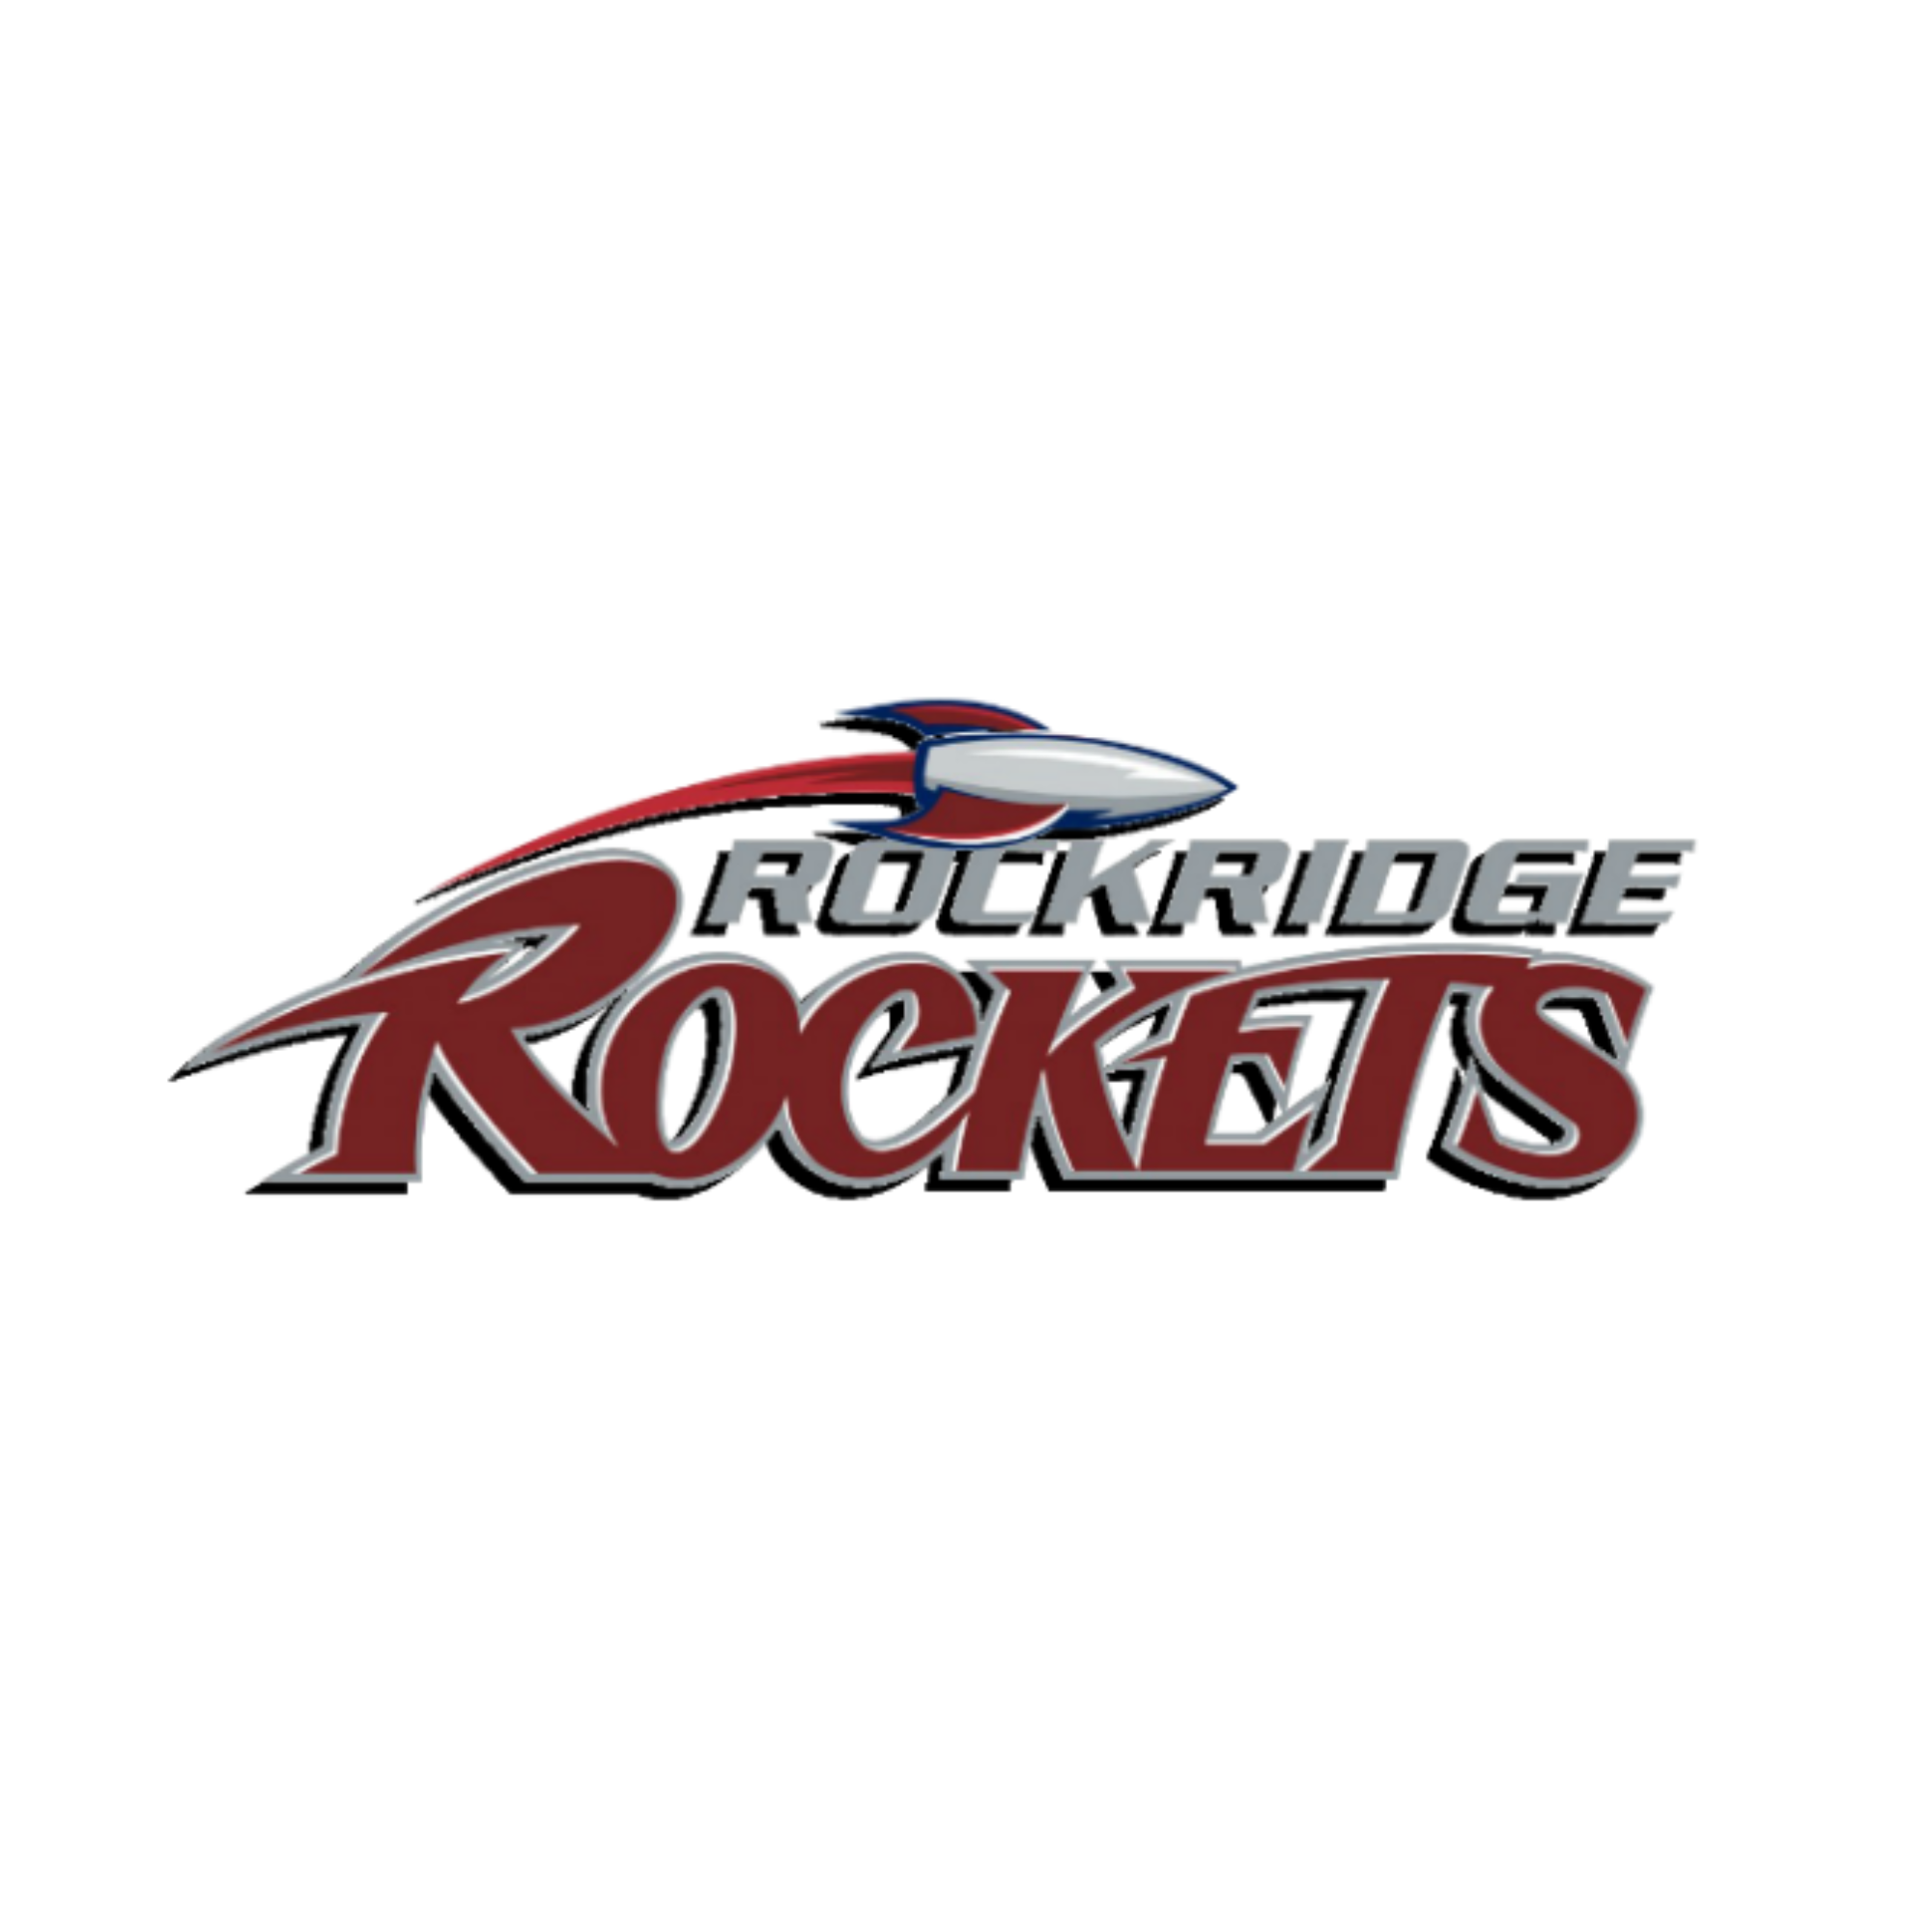 Rockridge rockets logo